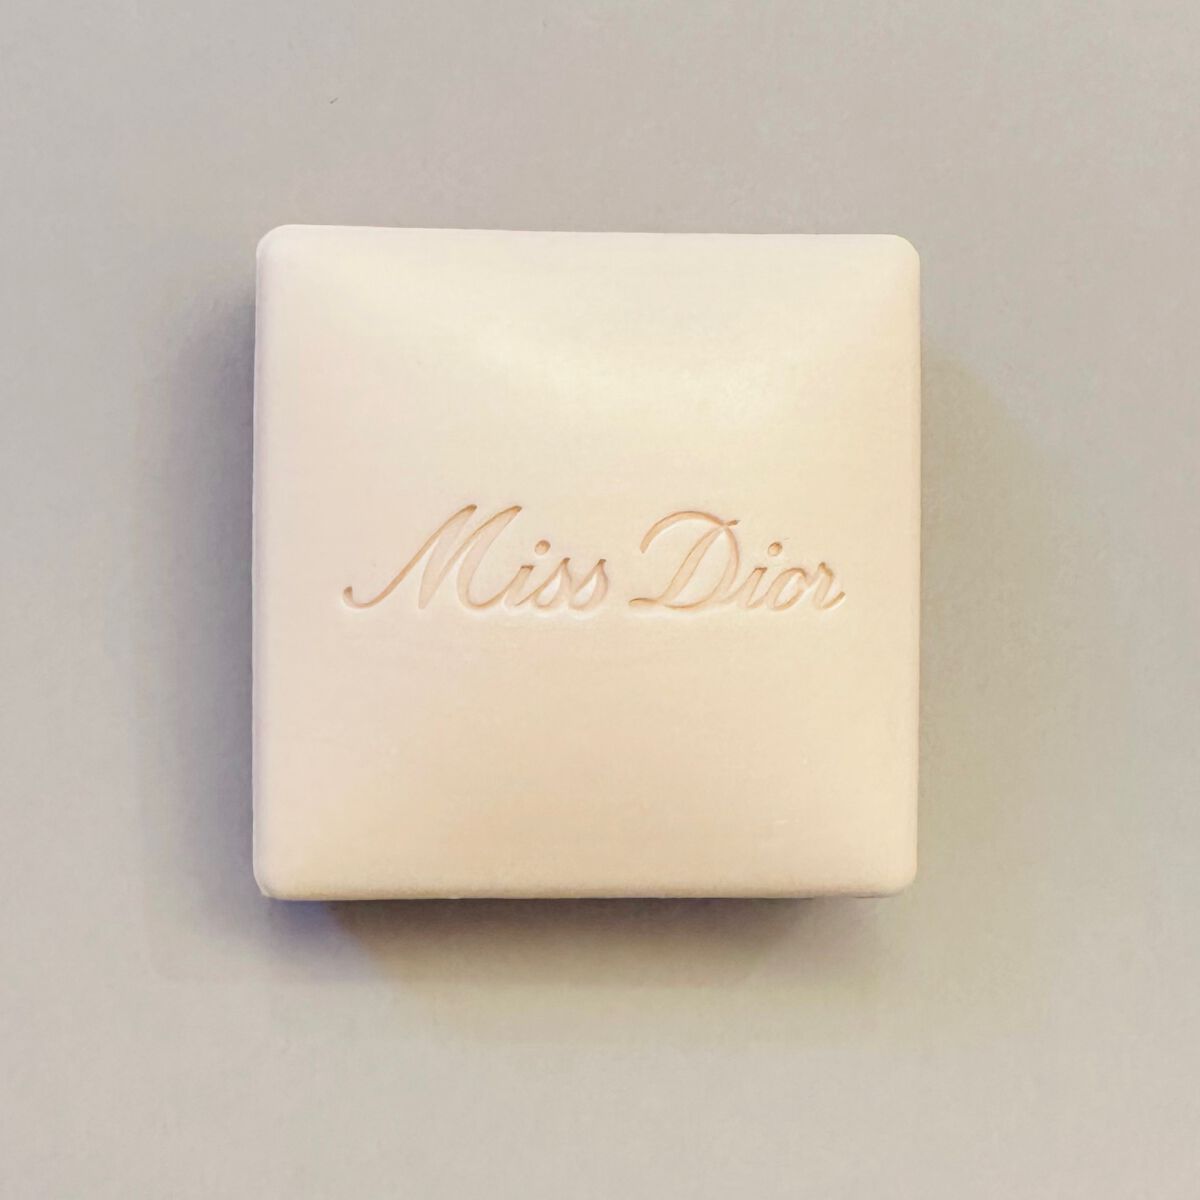 【未使用】Dior ミスディオール ソープ Miss Dior 固形石鹸